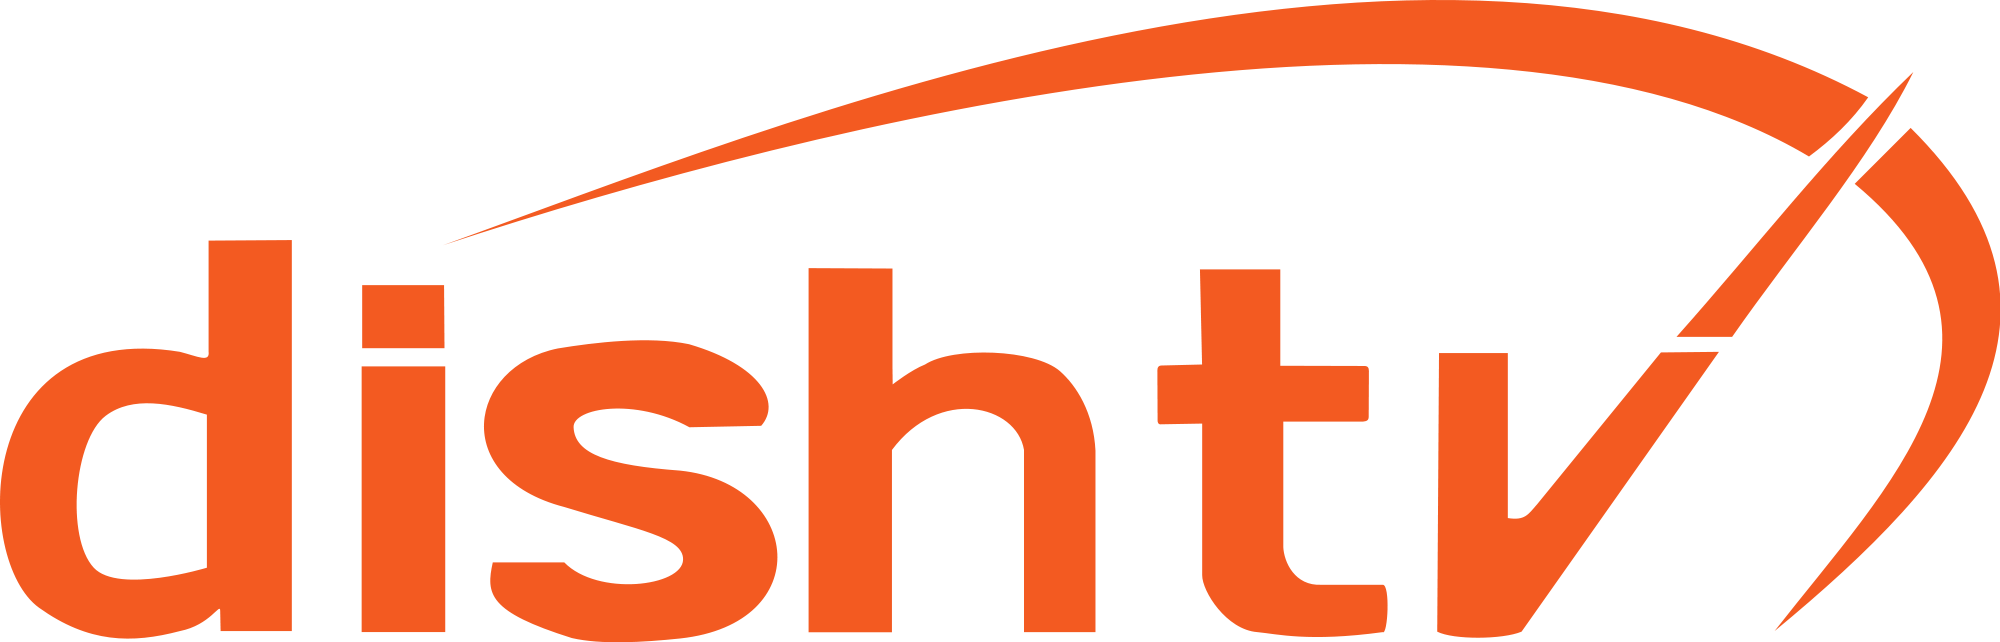 DishTV Brand Logo